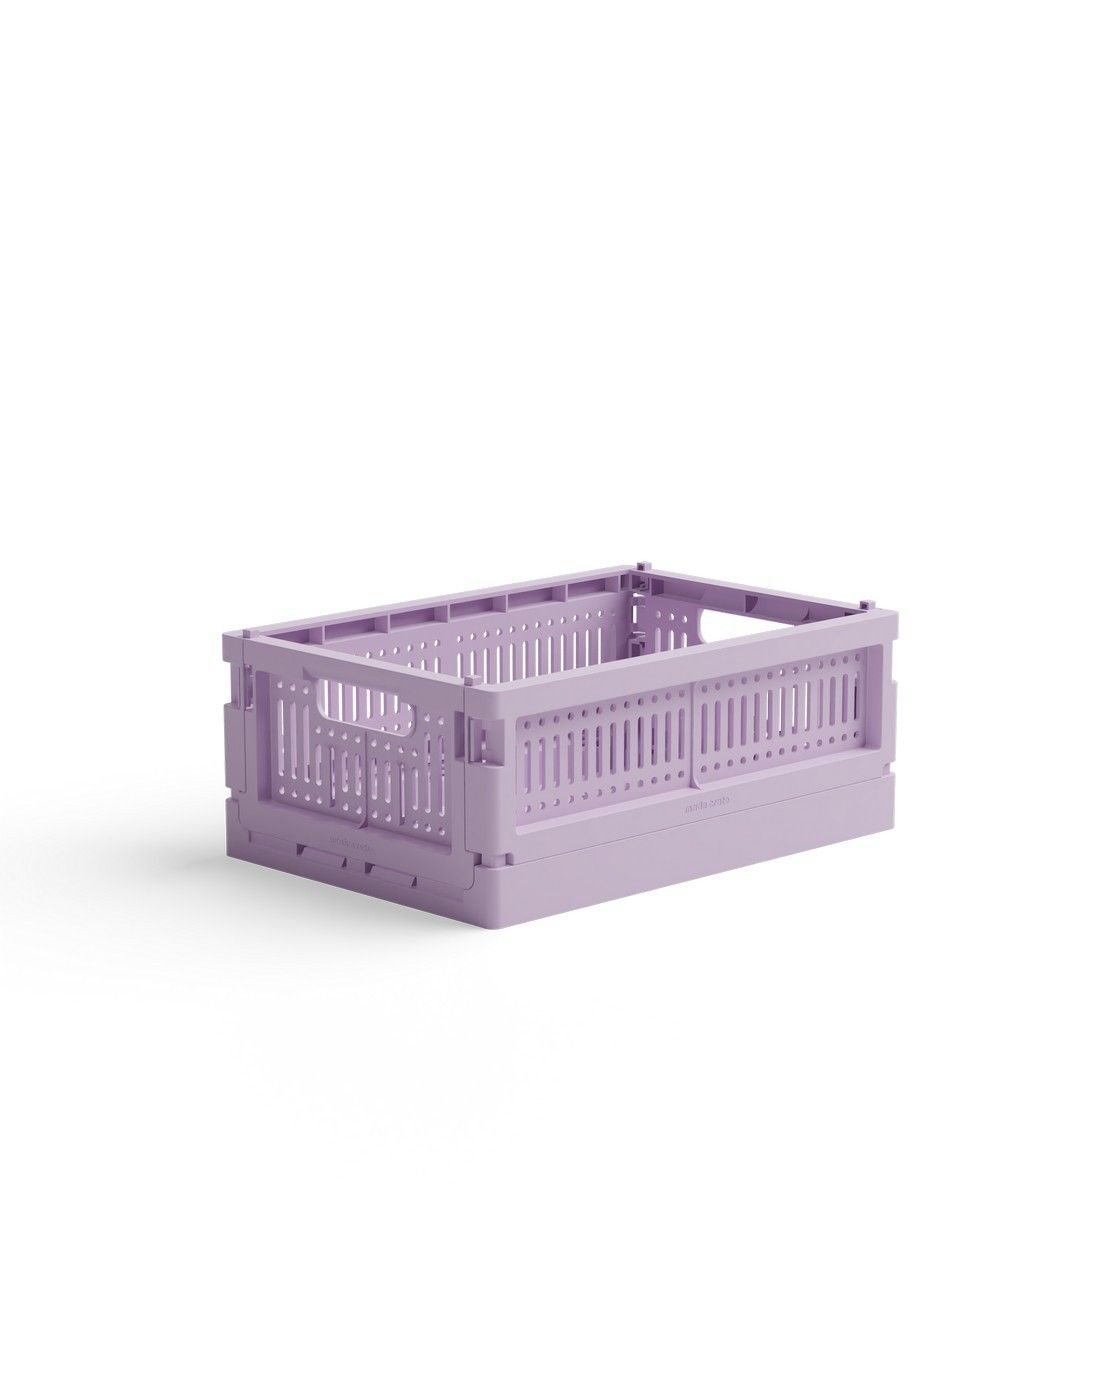 Skládací přepravka mini Made Crate  - lilac